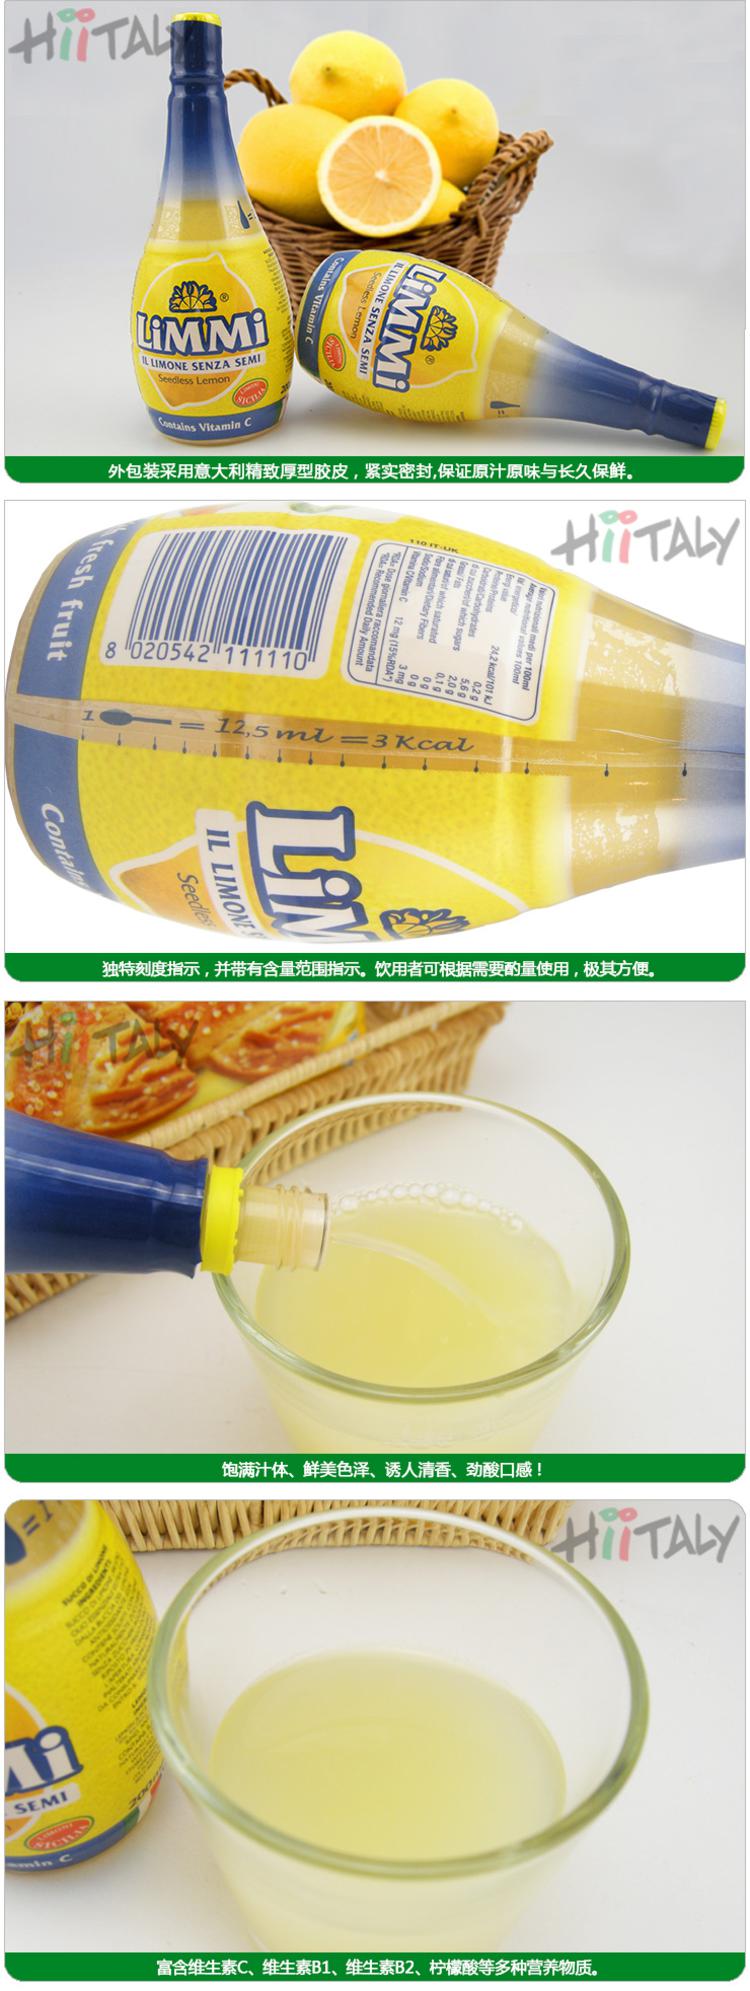 【淘最意大利】LIMMI 浓缩柠檬汁200ml 浓缩青柠檬汁200ml组合装 意大利进口食品